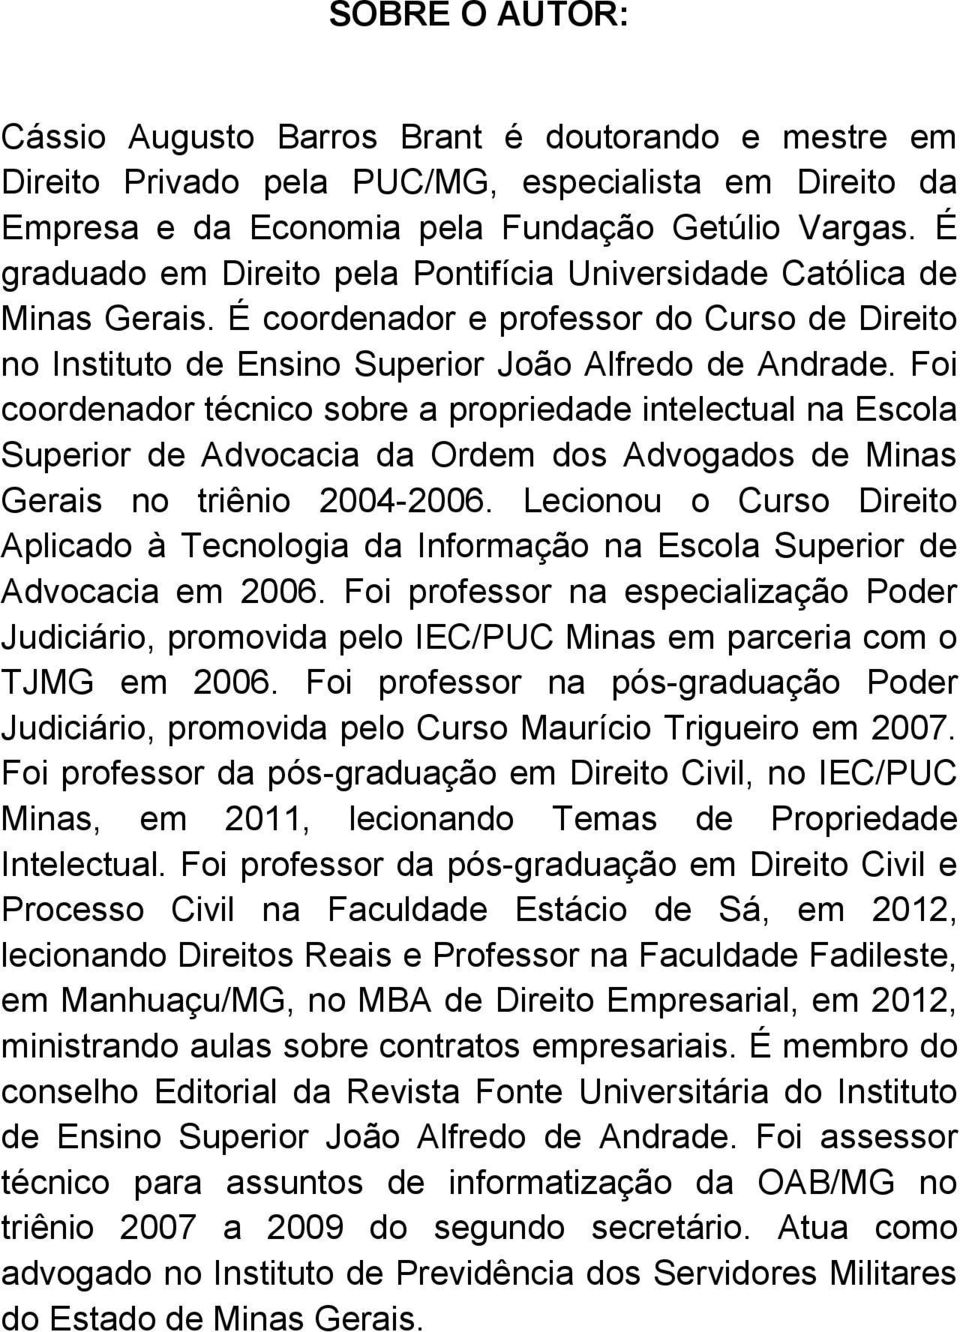 Foi coordenador técnico sobre a propriedade intelectual na Escola Superior de Advocacia da Ordem dos Advogados de Minas Gerais no triênio 2004-2006.